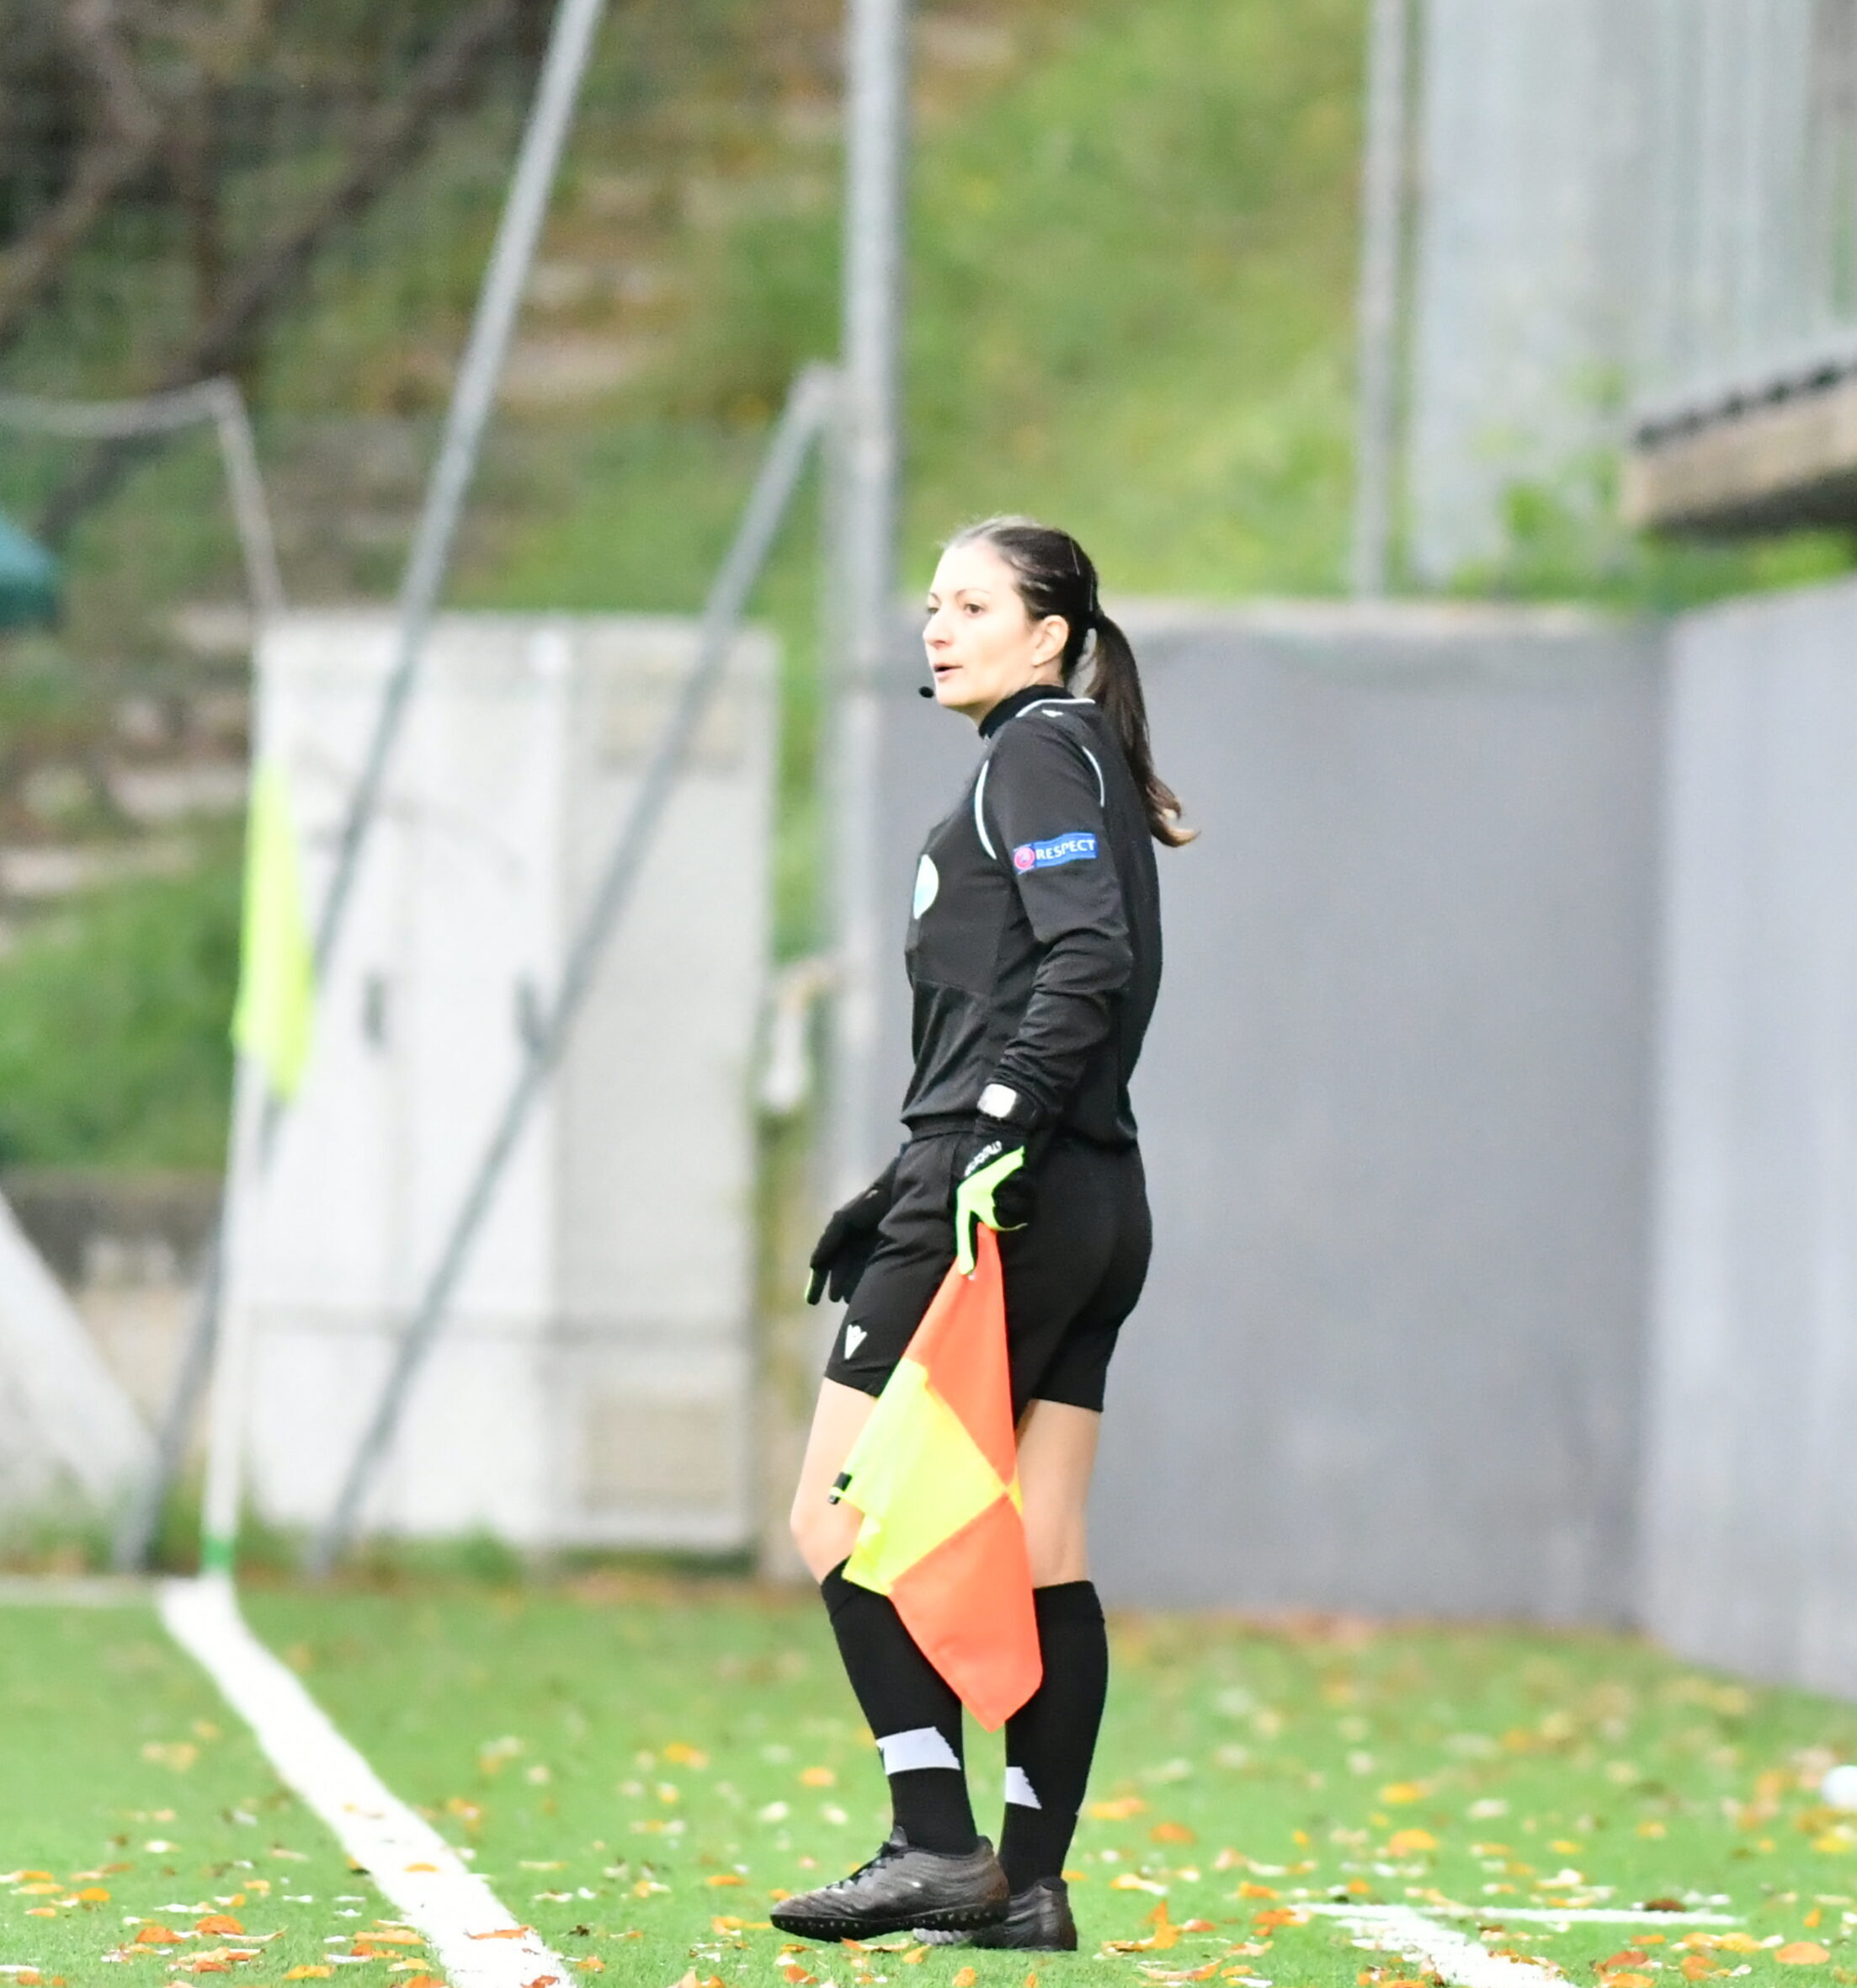 Laura Cordani, primo arbitro donna di San Marino: “In campo non c’è sessismo, sugli spalti sì”